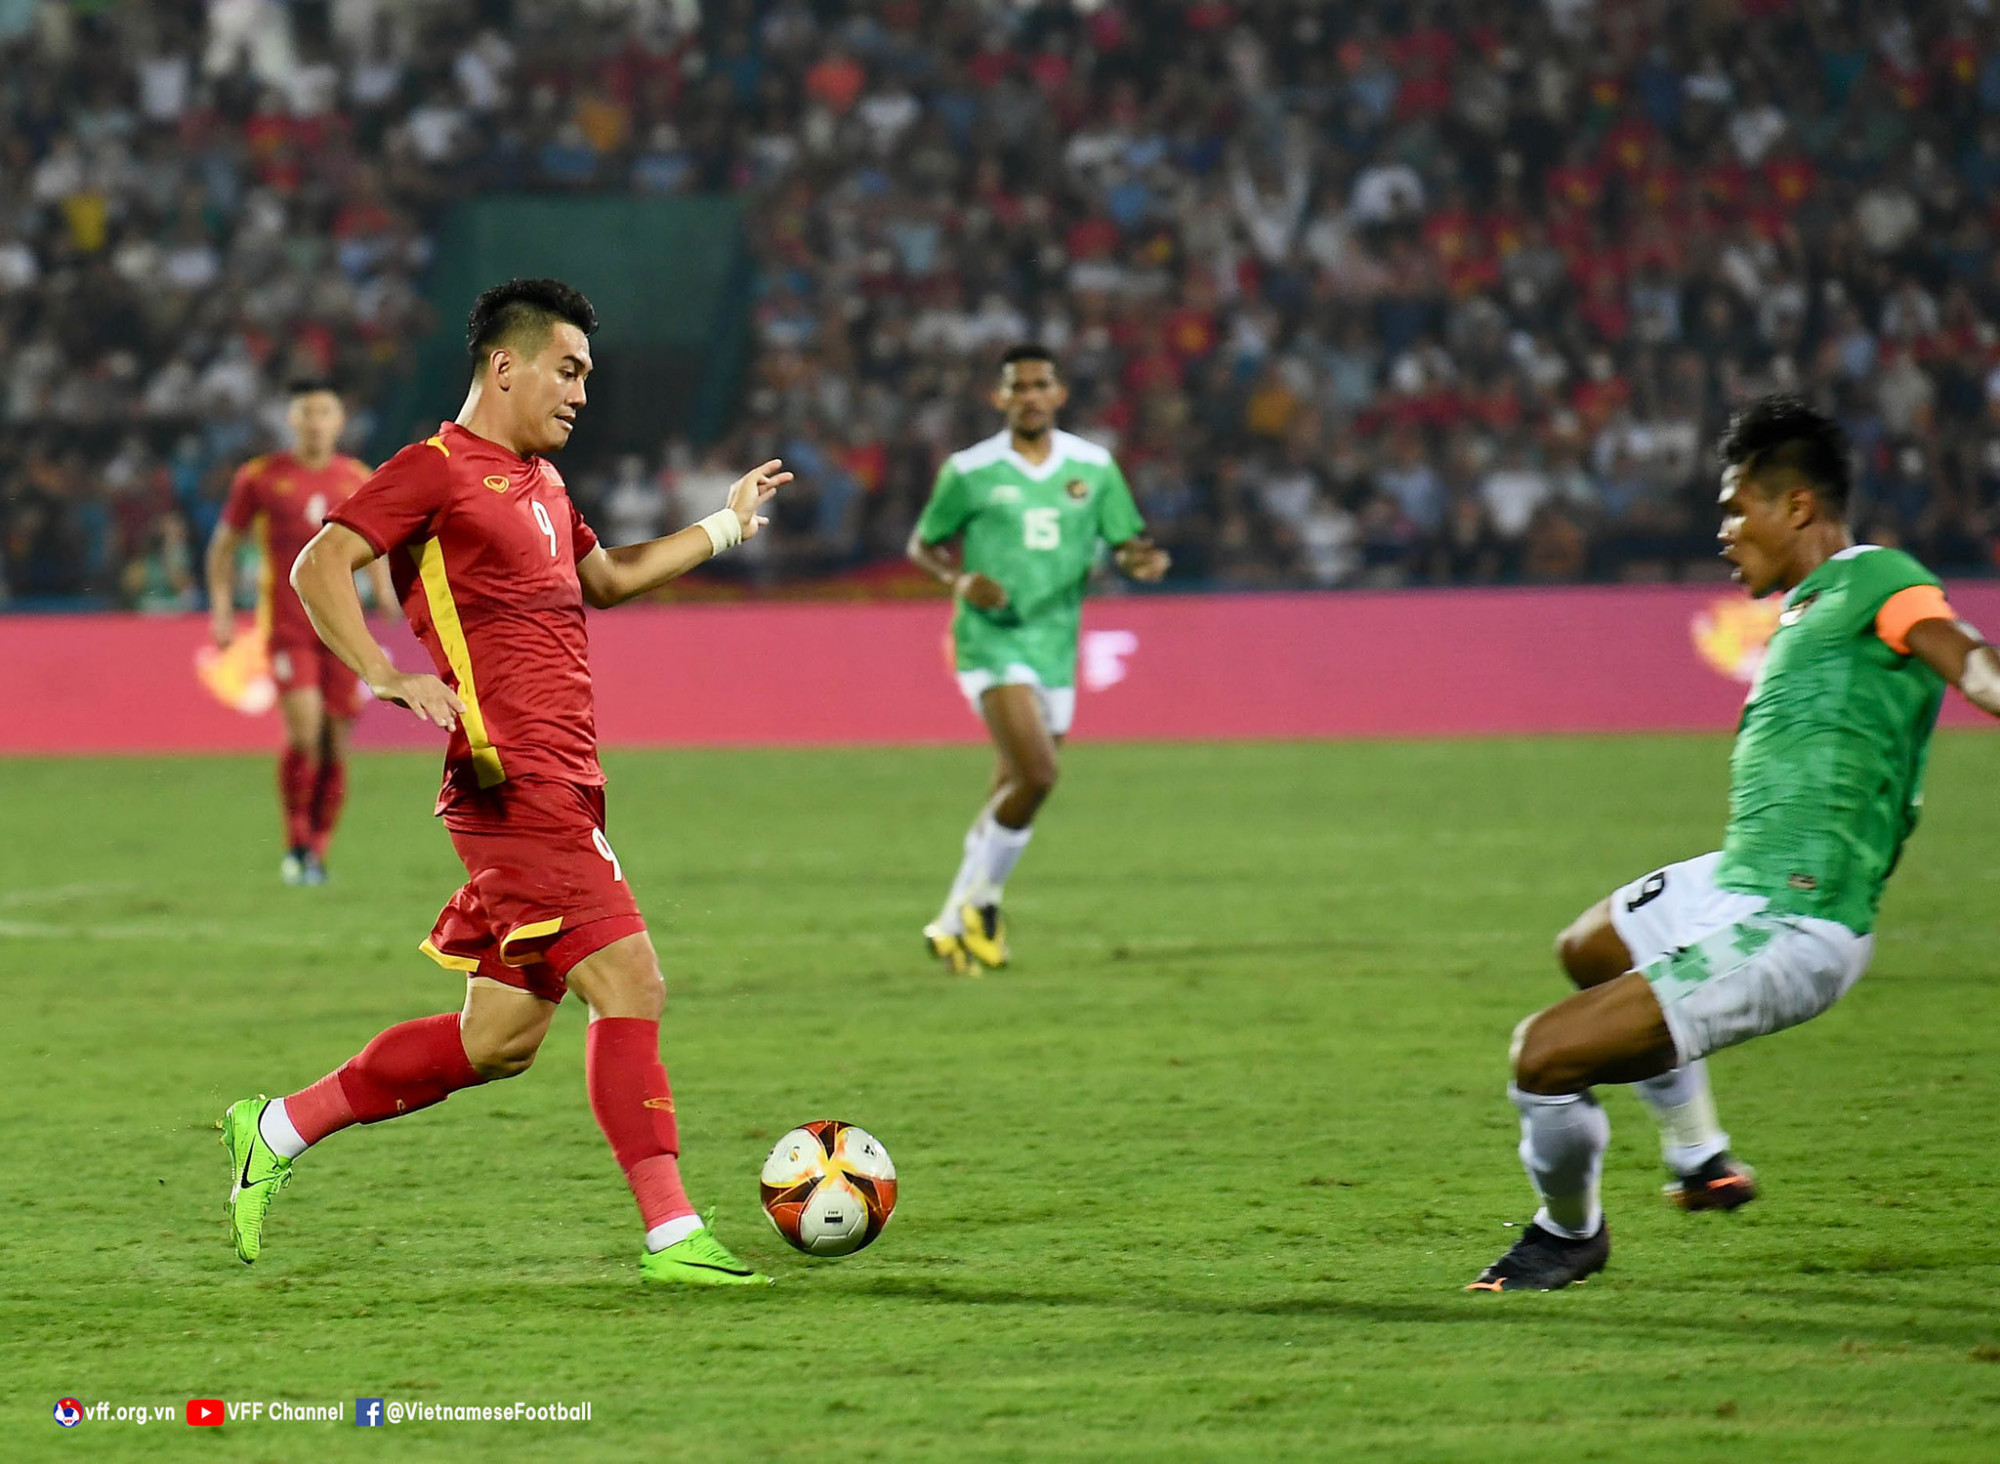 Tiến Linh thể hiện vai trò tiền đạo số 1 của tuyển Việt Nam thời điểm hiện tại với bàn thắng mở tỉ số - Ảnh VFF